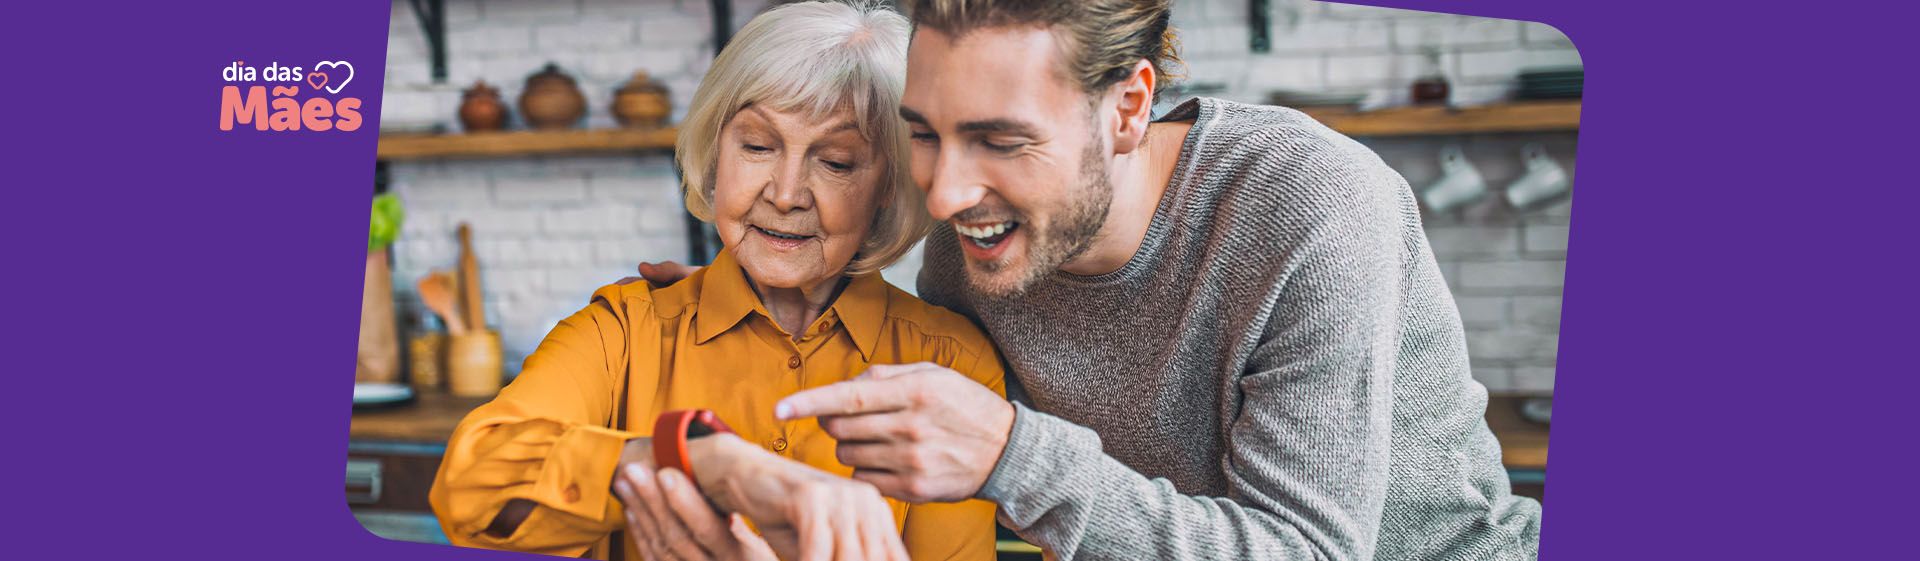 Homem jovem ao lado de mulher idosa, dando smartwatch de presente de Dia das Mães